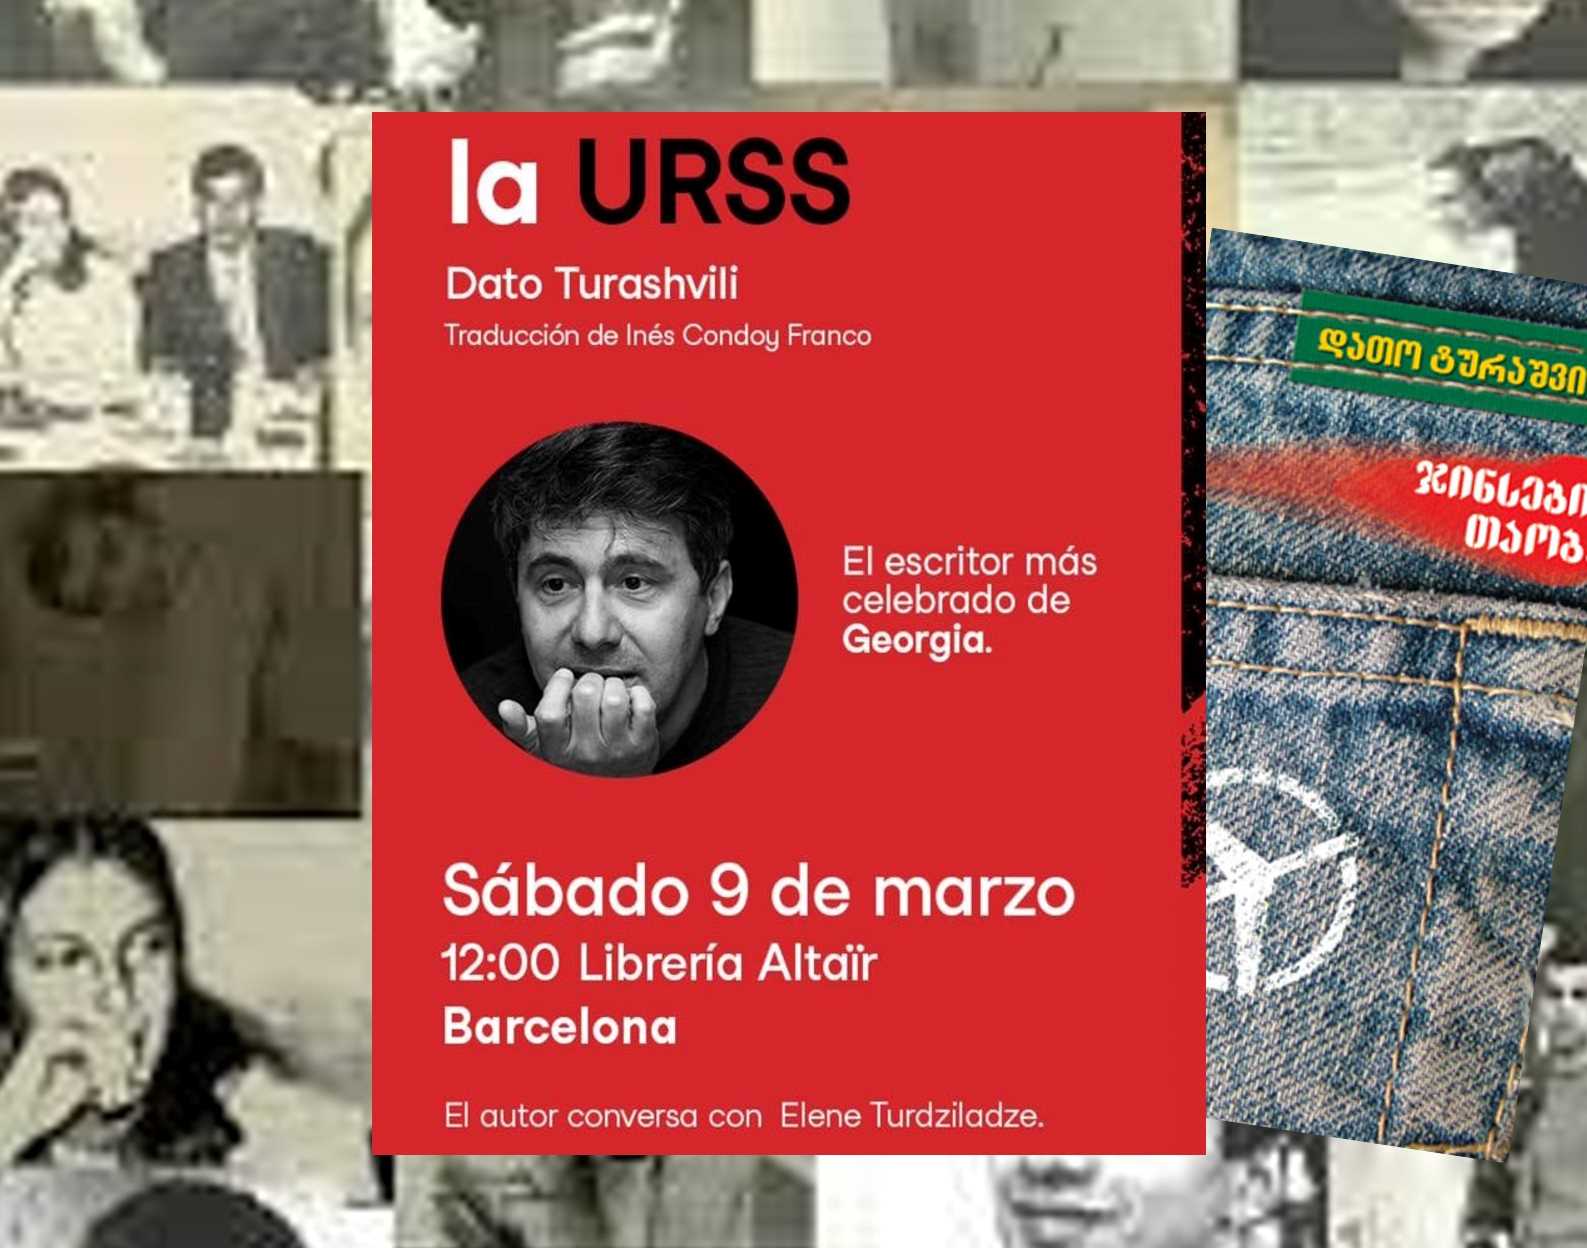 9/10 მარტი, დათო ტურაშვილის „ჯინსების თაობა“- „Vuelo desde la URSS“ ესპანური ვერსიის პრეზენტაცია ბარსელონაში